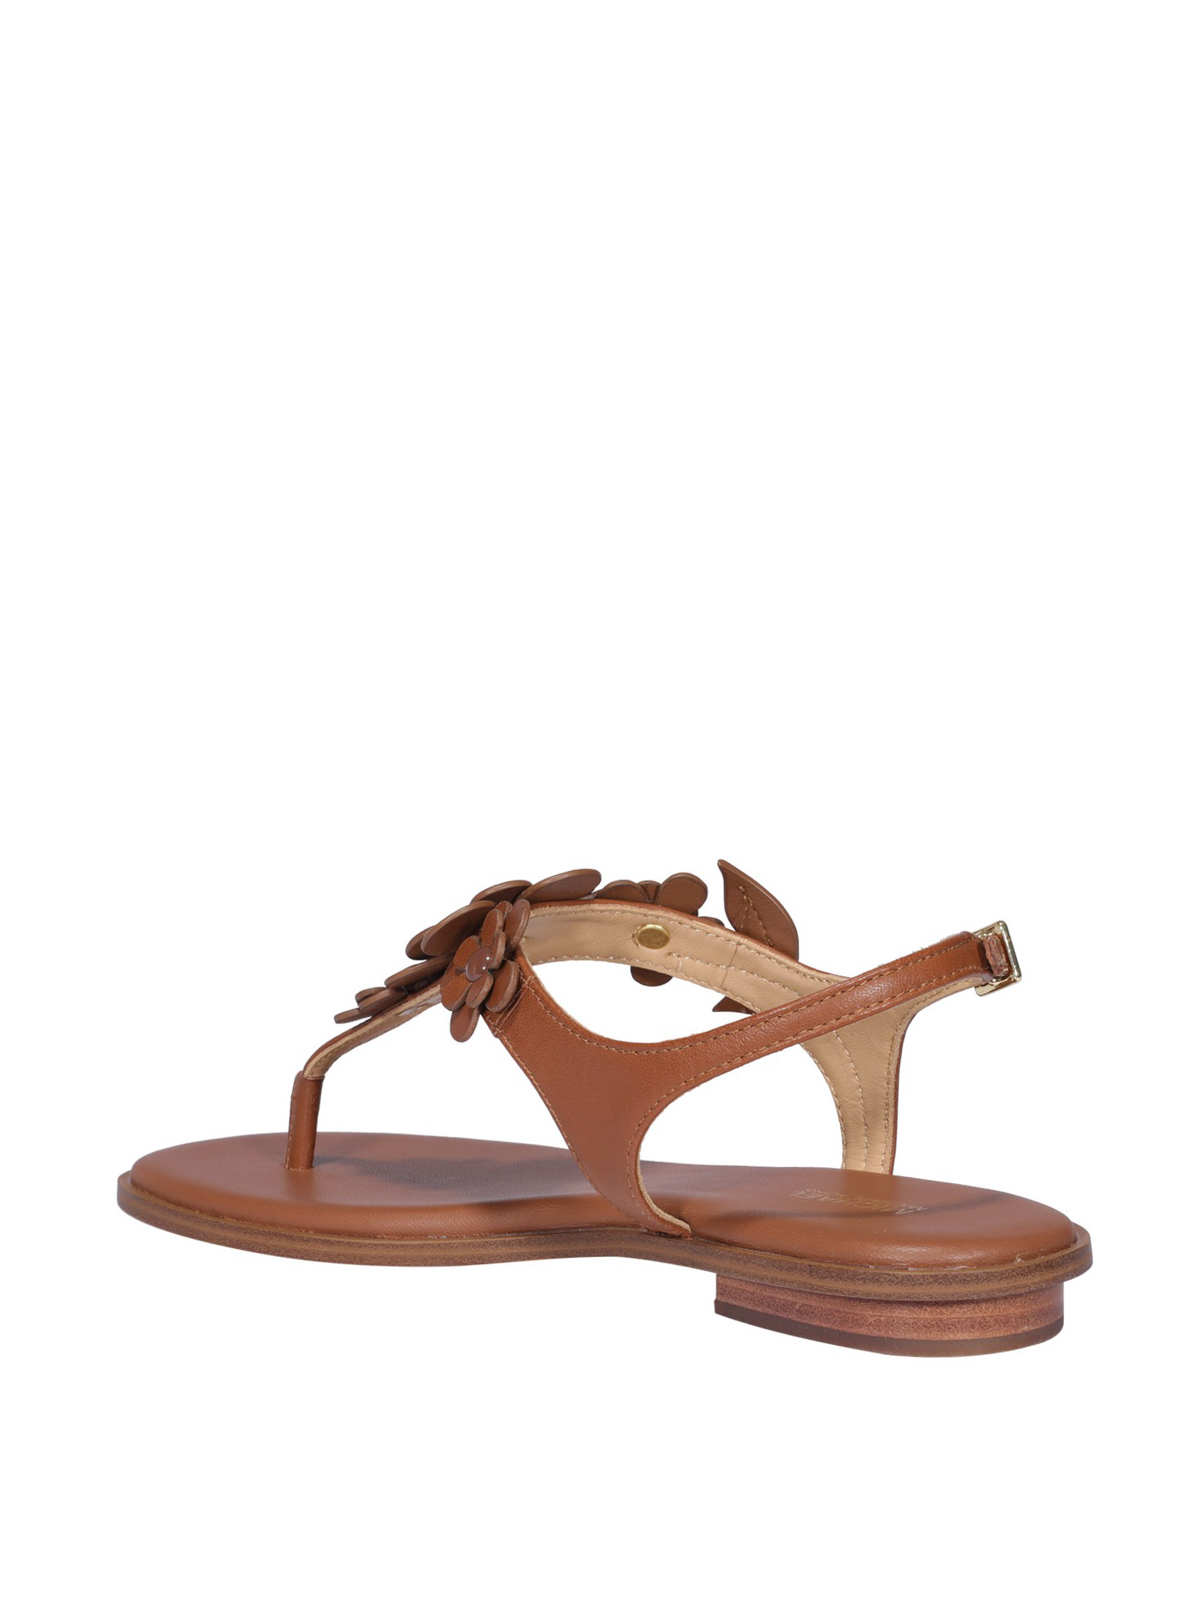 Sandals Michael Kors - Flora leather sandals - 40S0FLFA3L230 